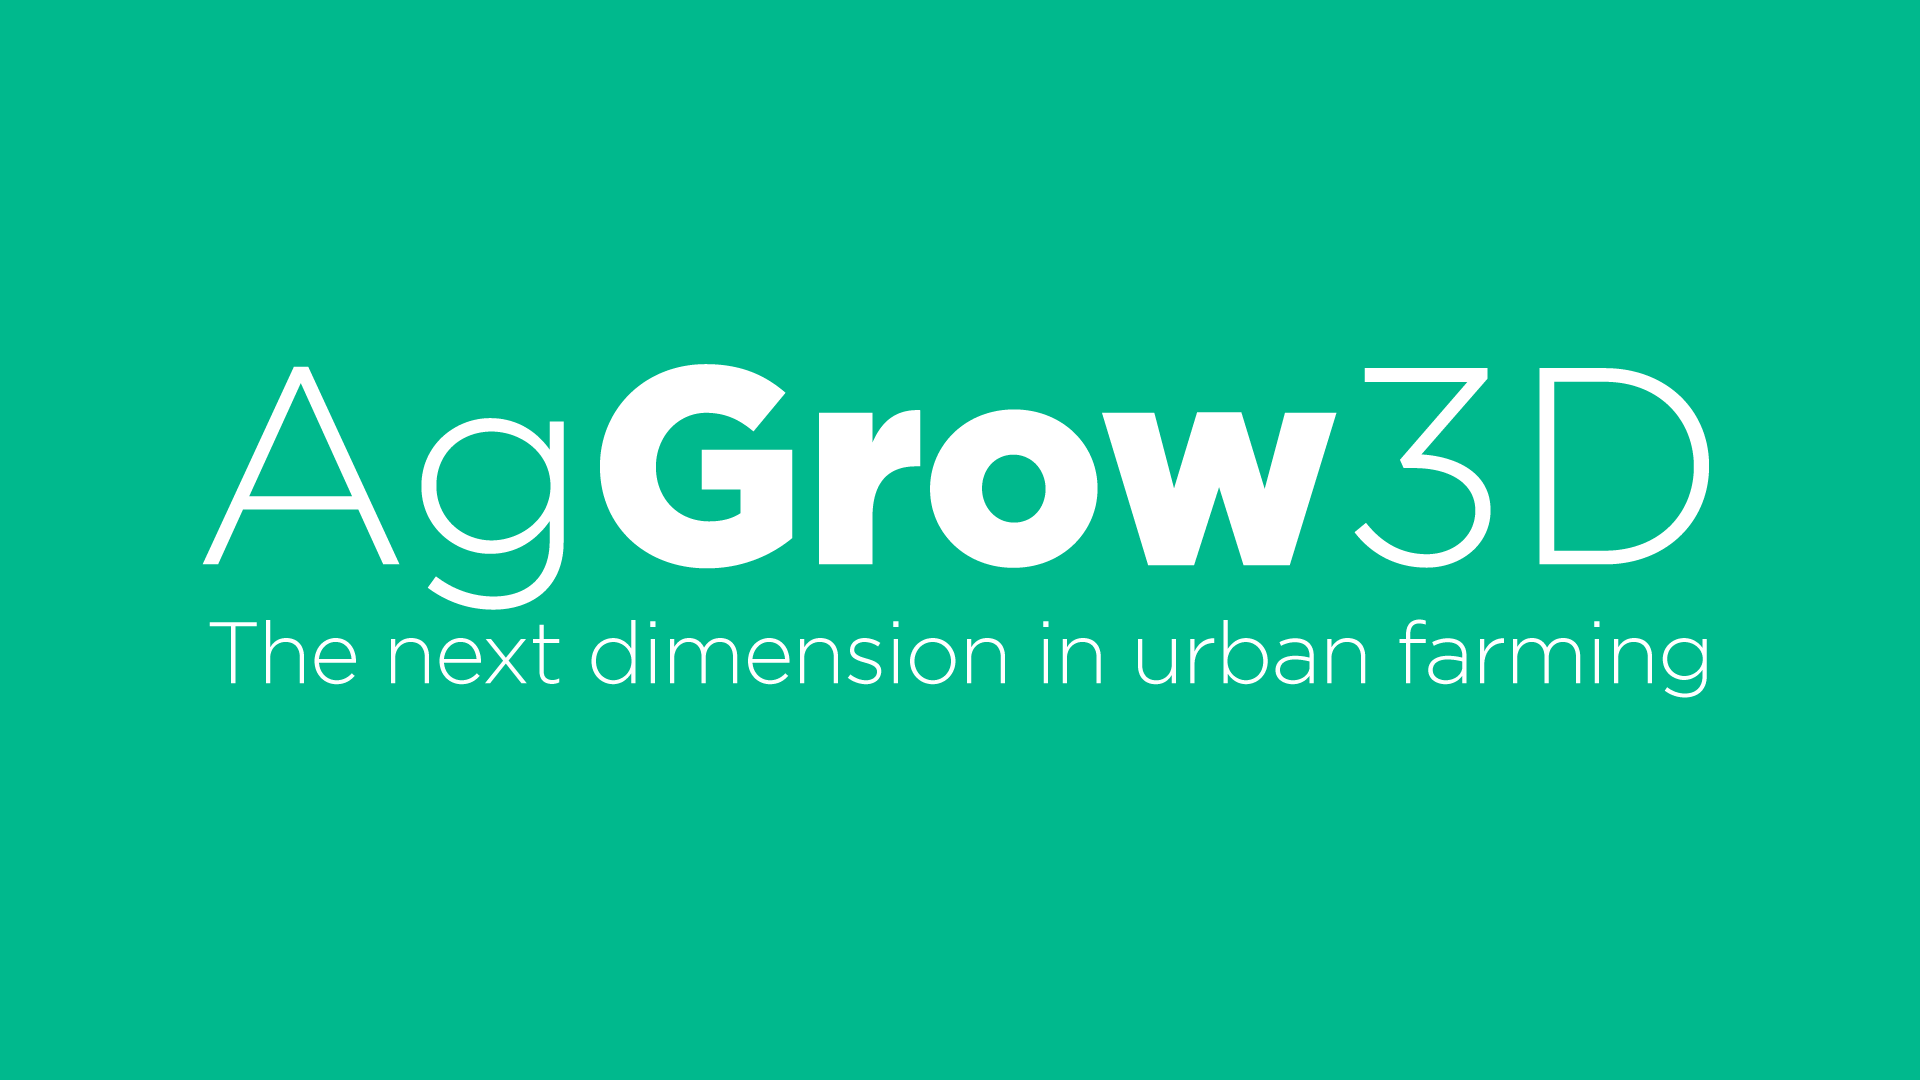 AgGrow3D: the next dimension in urban farming